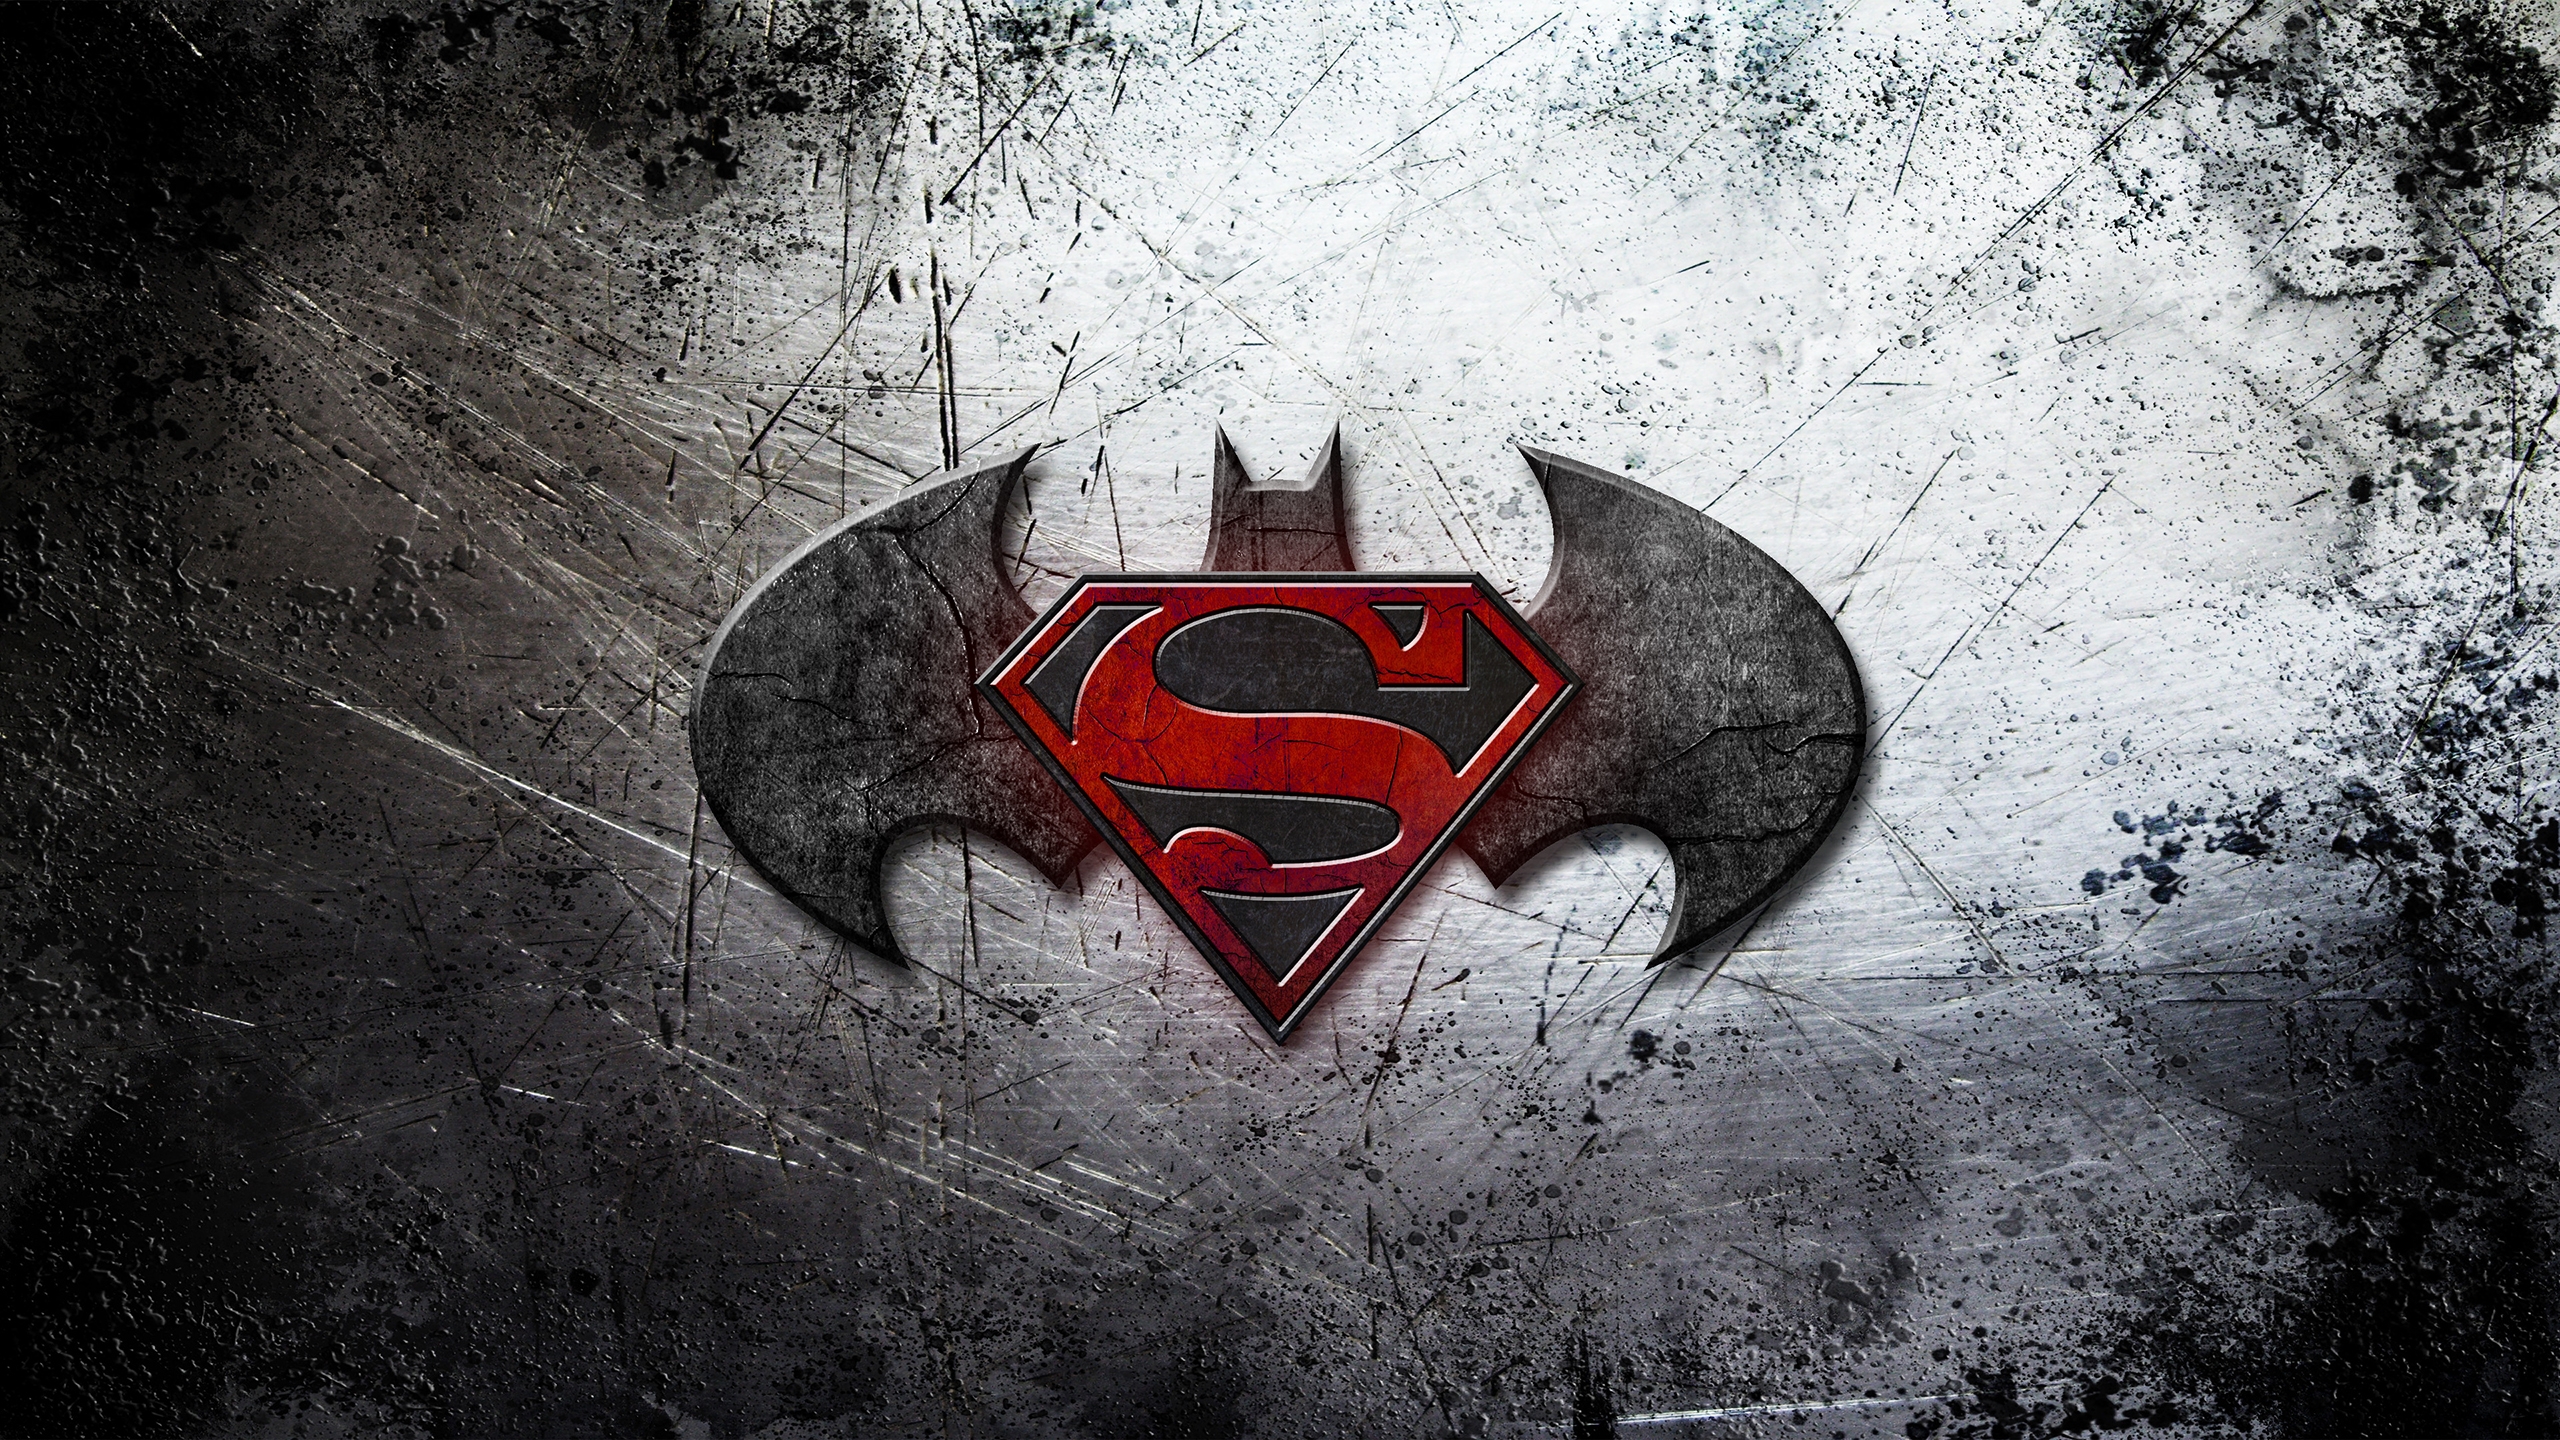 Batman Vs Superman Logo Wallpaper Image Id